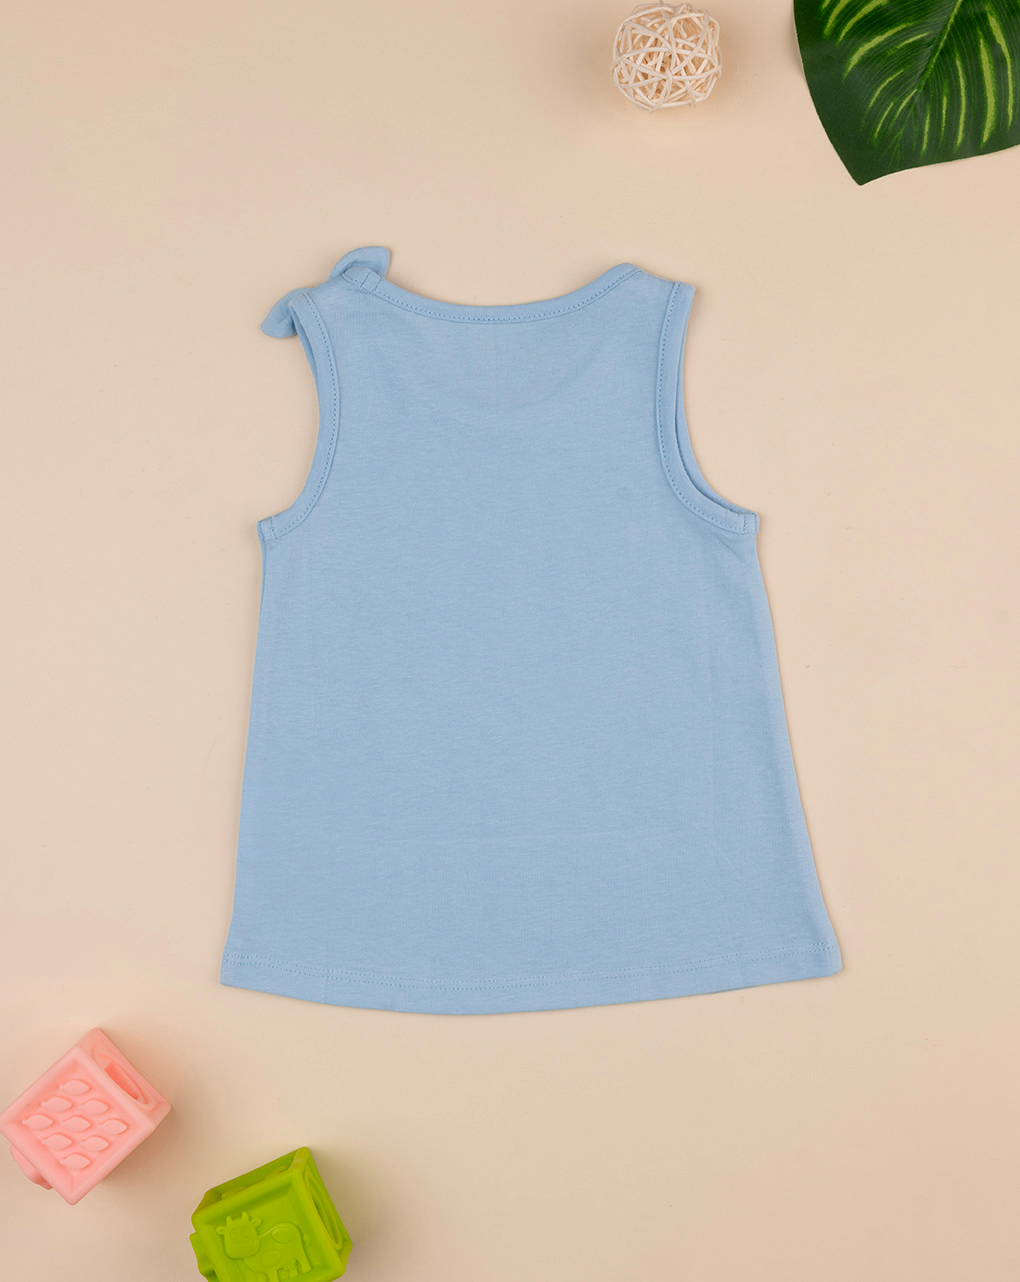 Camiseta de tirantes azul "margarita" de niña - Prénatal